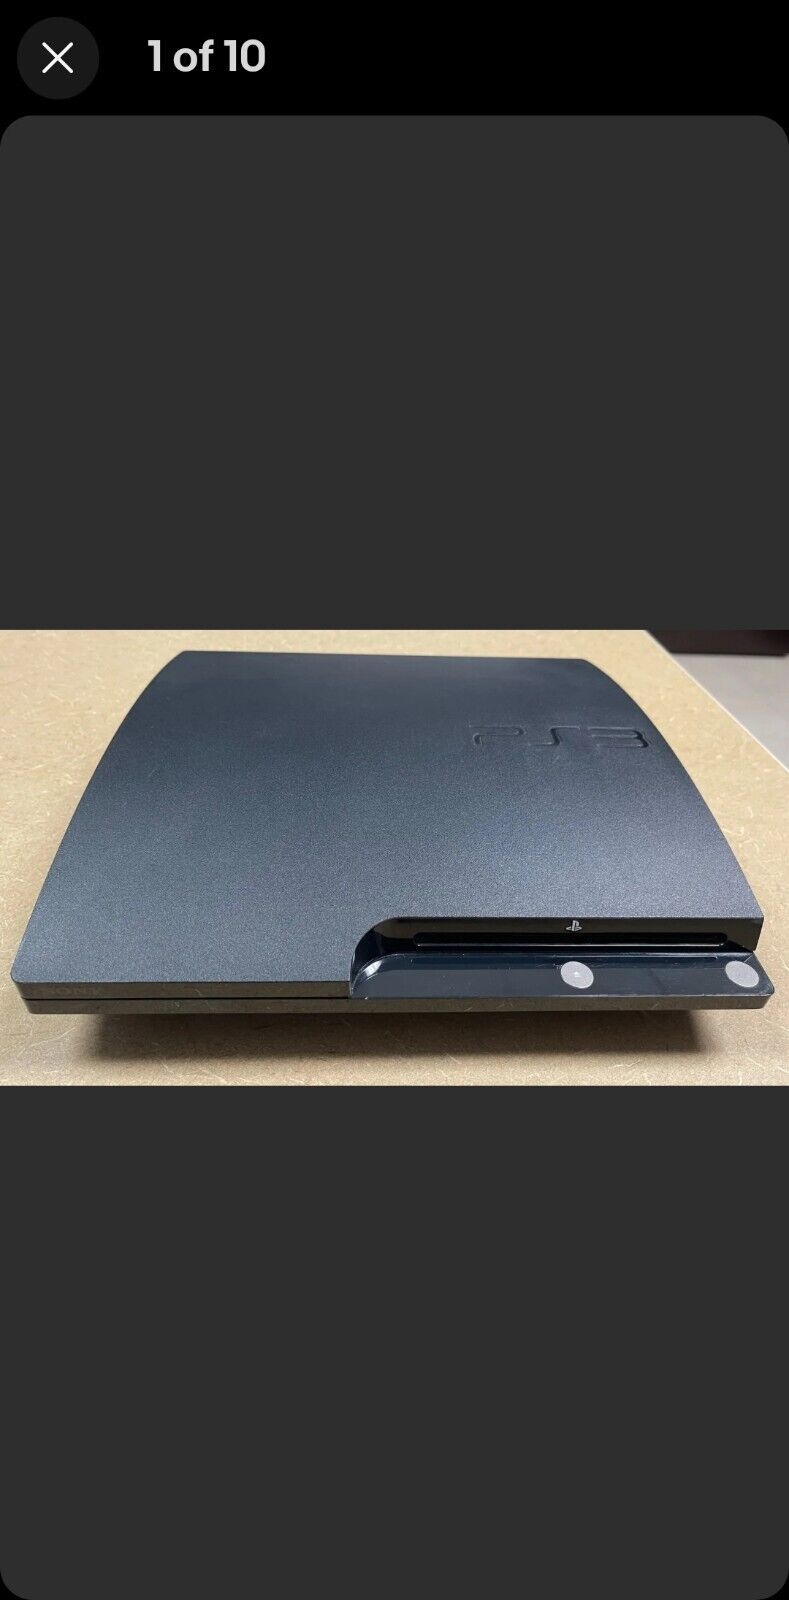 Sony PlayStation 3 Slim 500GB Console - Black